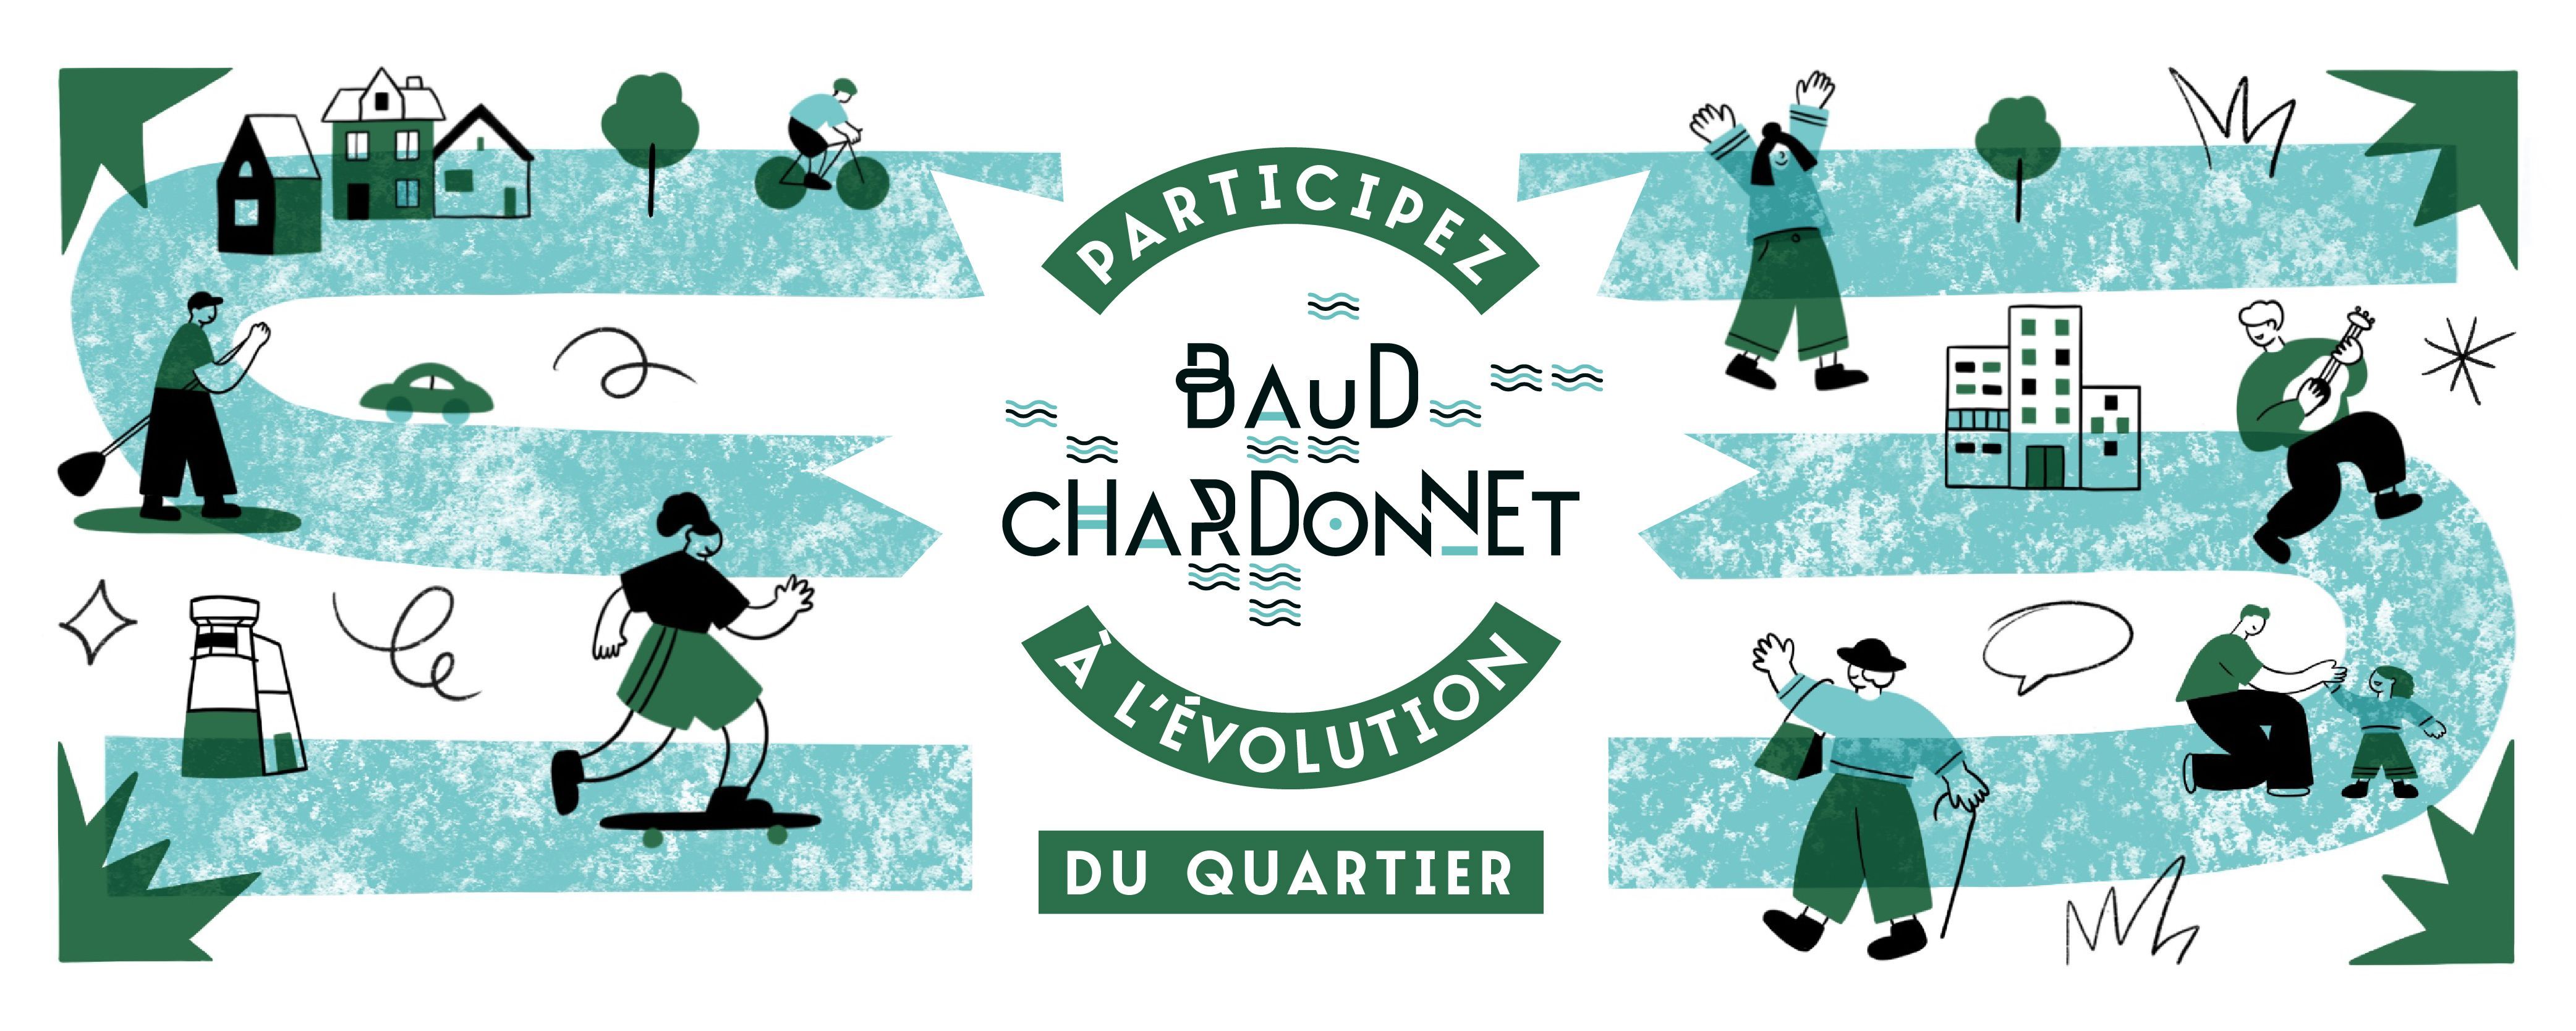 Baud-Chardonnet en mouvement : l'évolution du quartier continue !